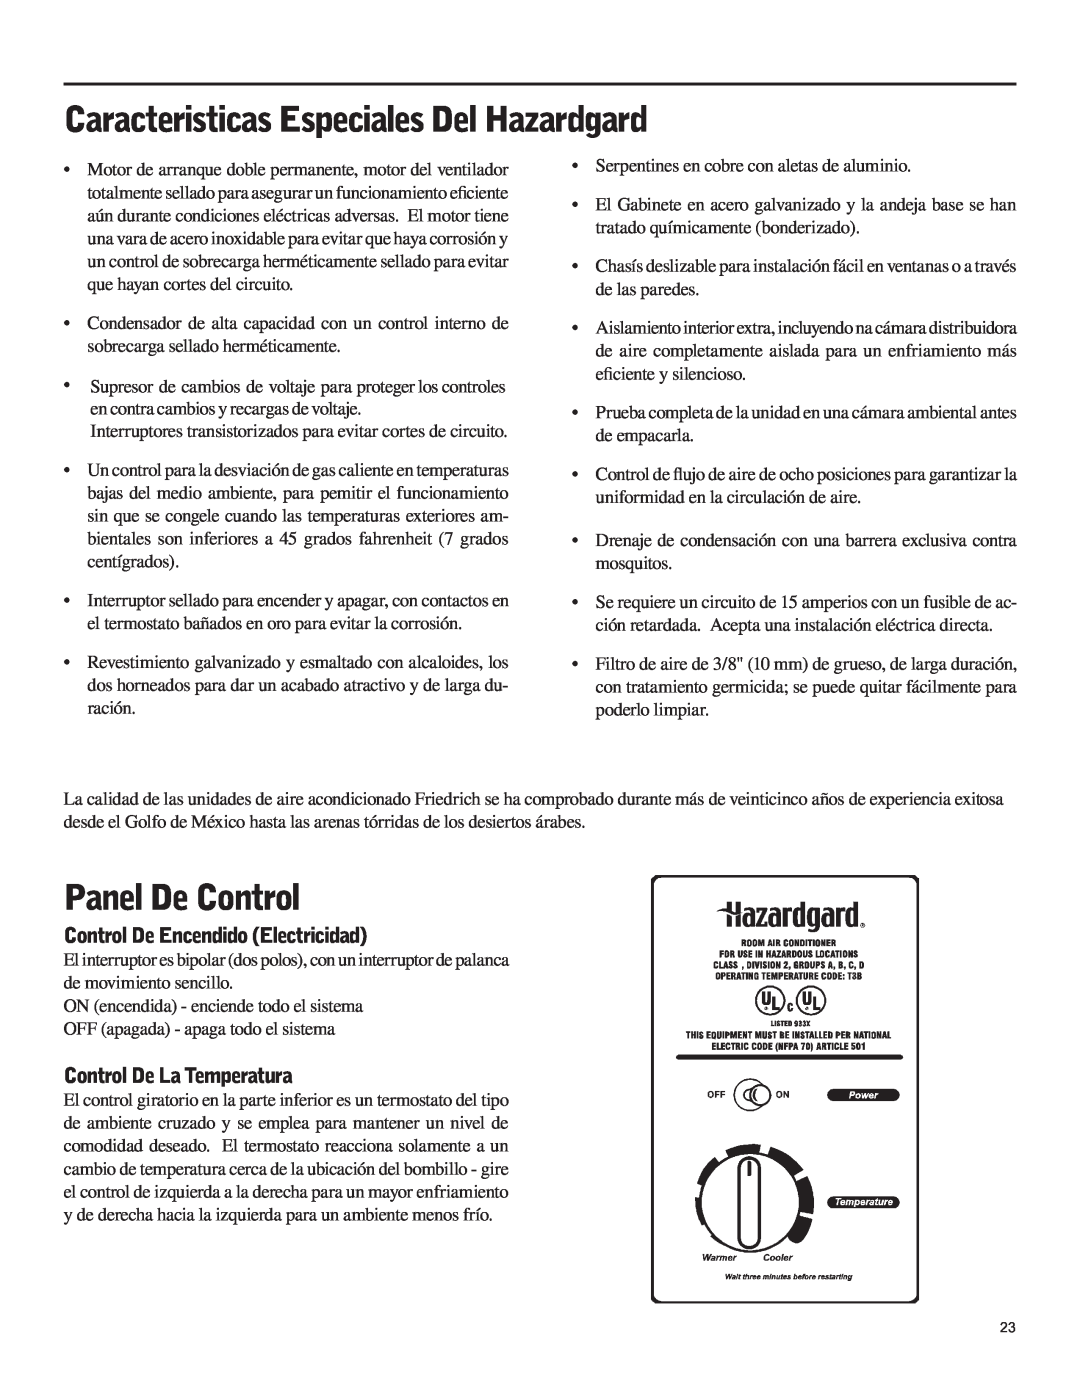 Friedrich SH15 Caracteristicas Especiales Del Hazardgard, Panel De Control, Control De Encendido Electricidad 